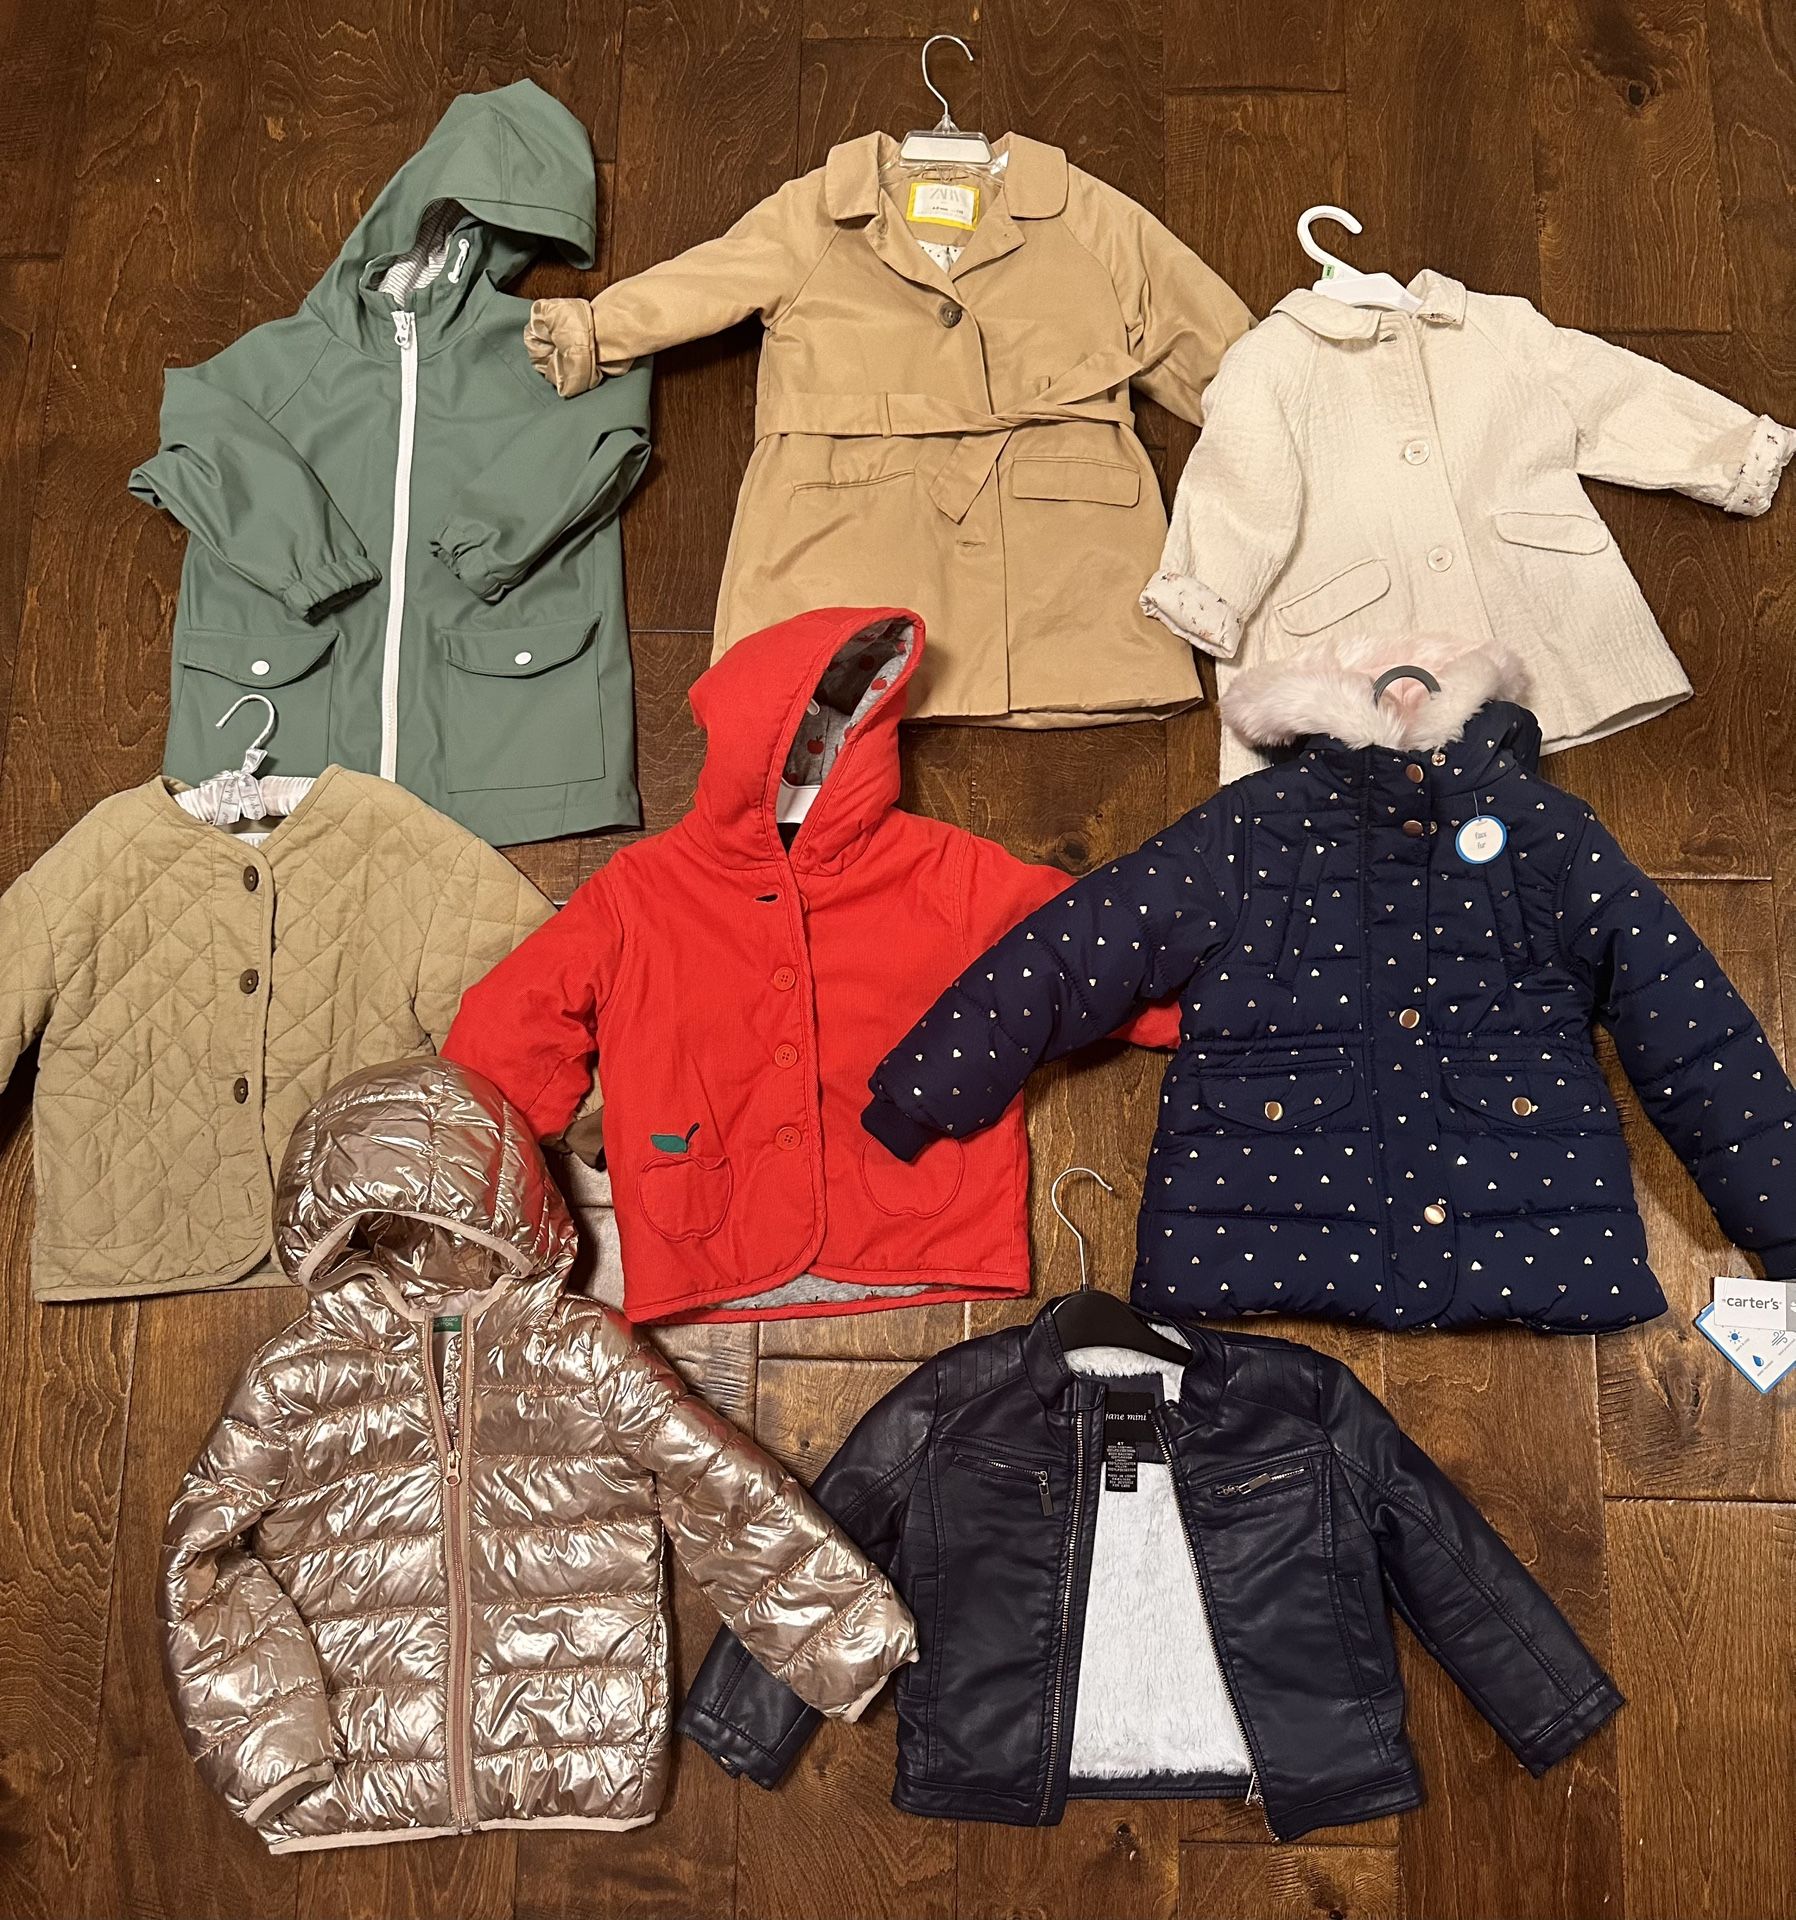 Zara, Jackets & Coats